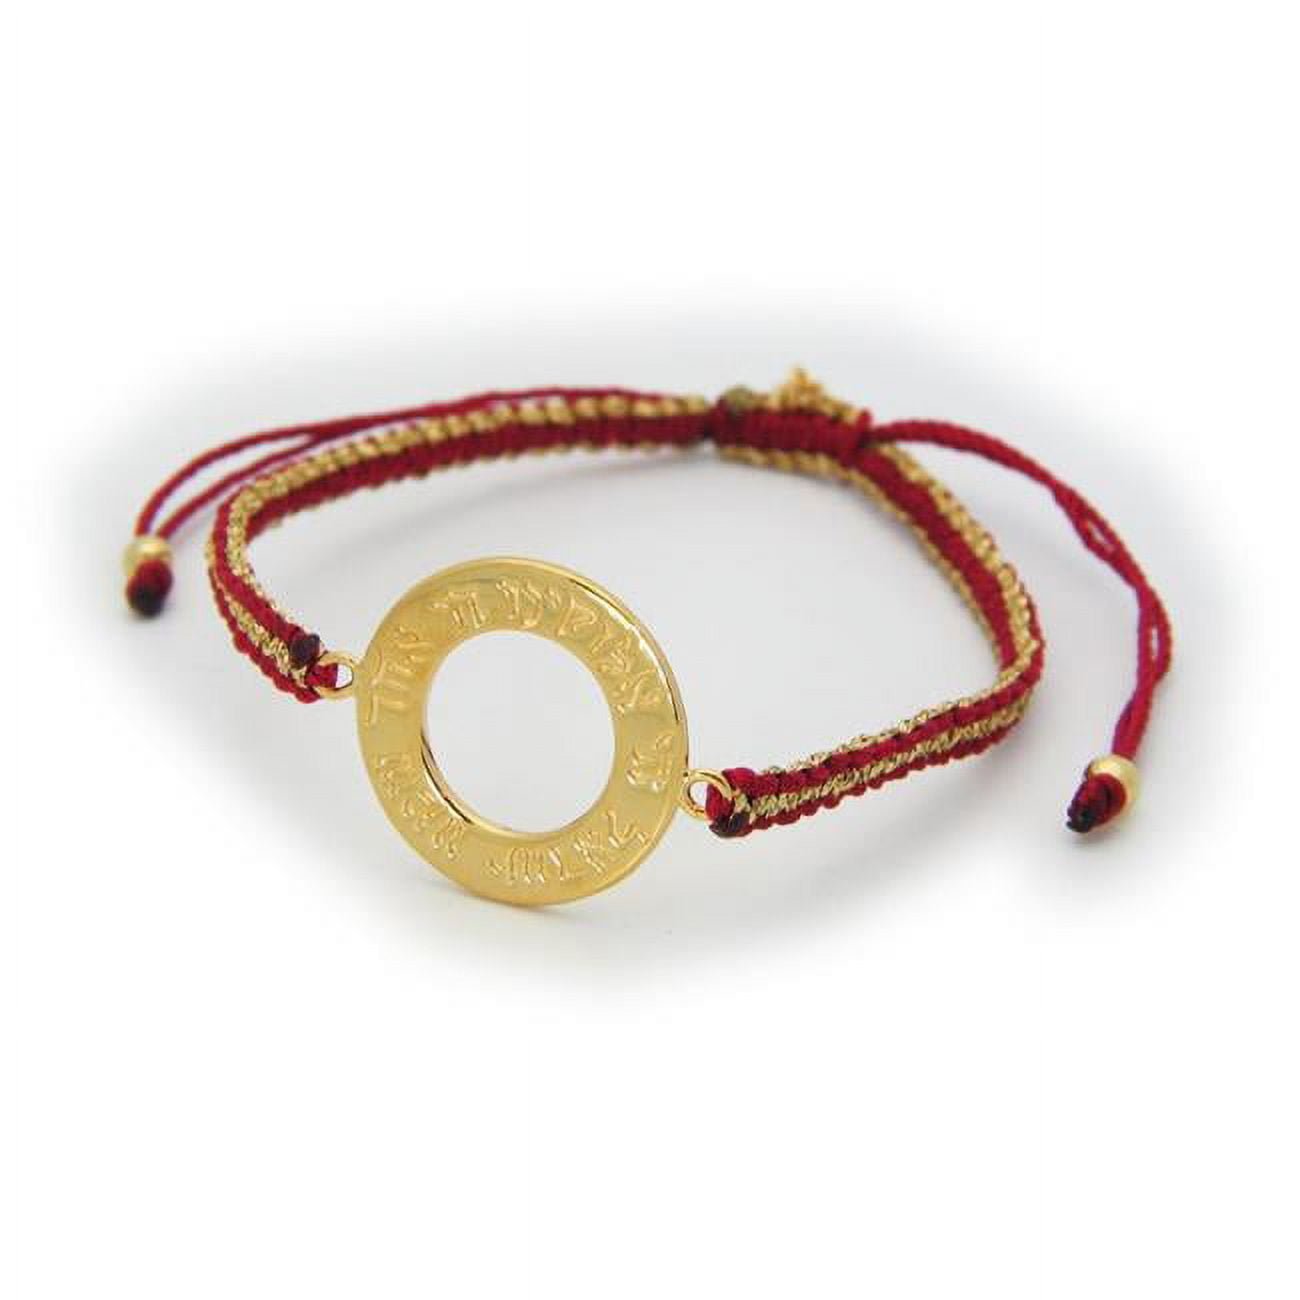 212372r Golden Shema Adjustable Bracelet, Red & Metal Cord